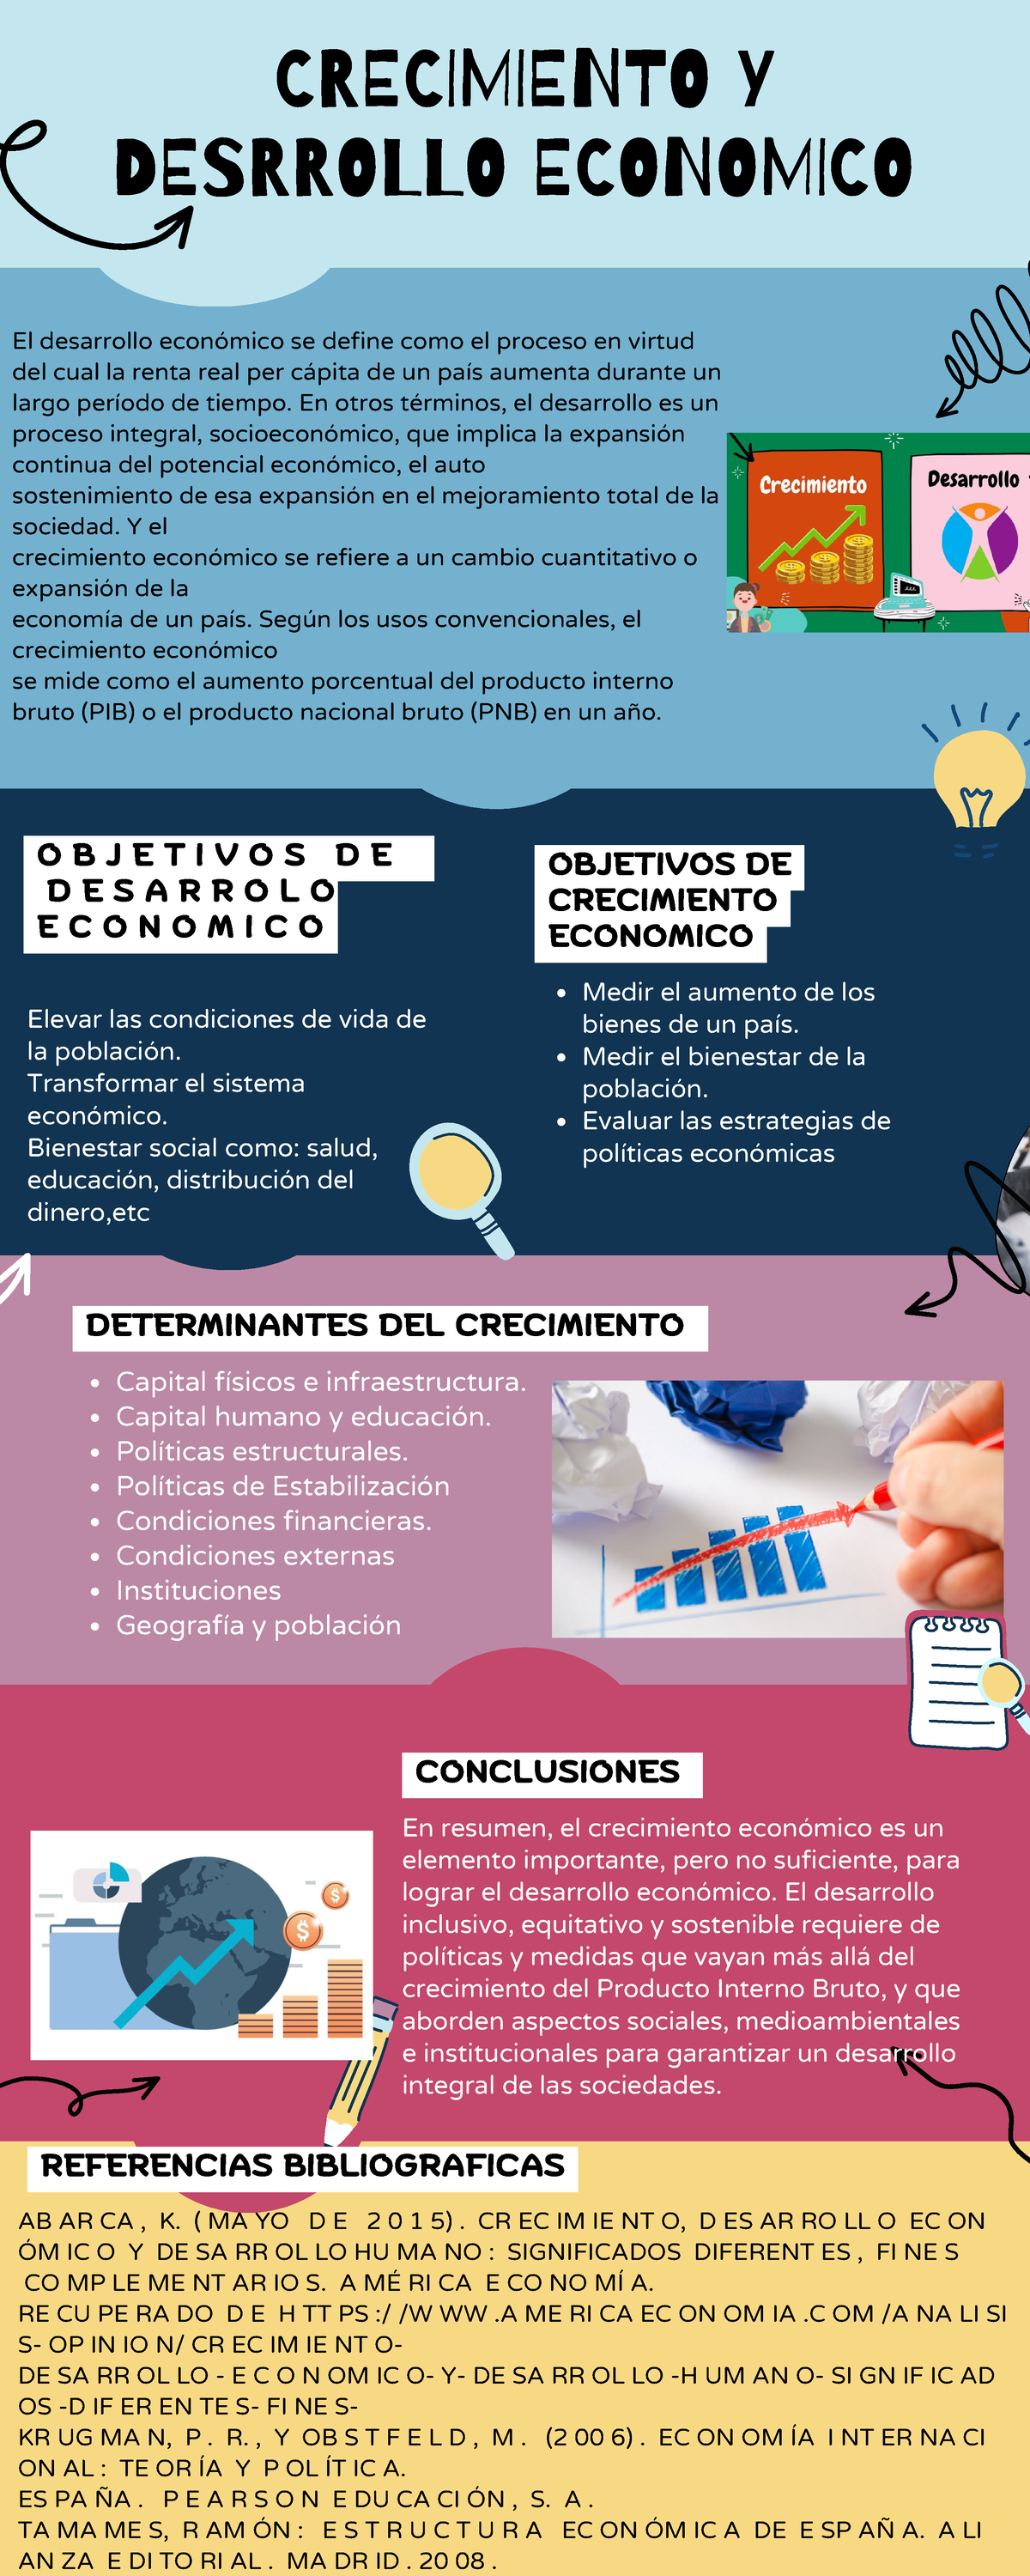 Crecimiento Y Desarrollo Economico - CRECIMIENTO Y DESRROLLO ECONOMICO ...